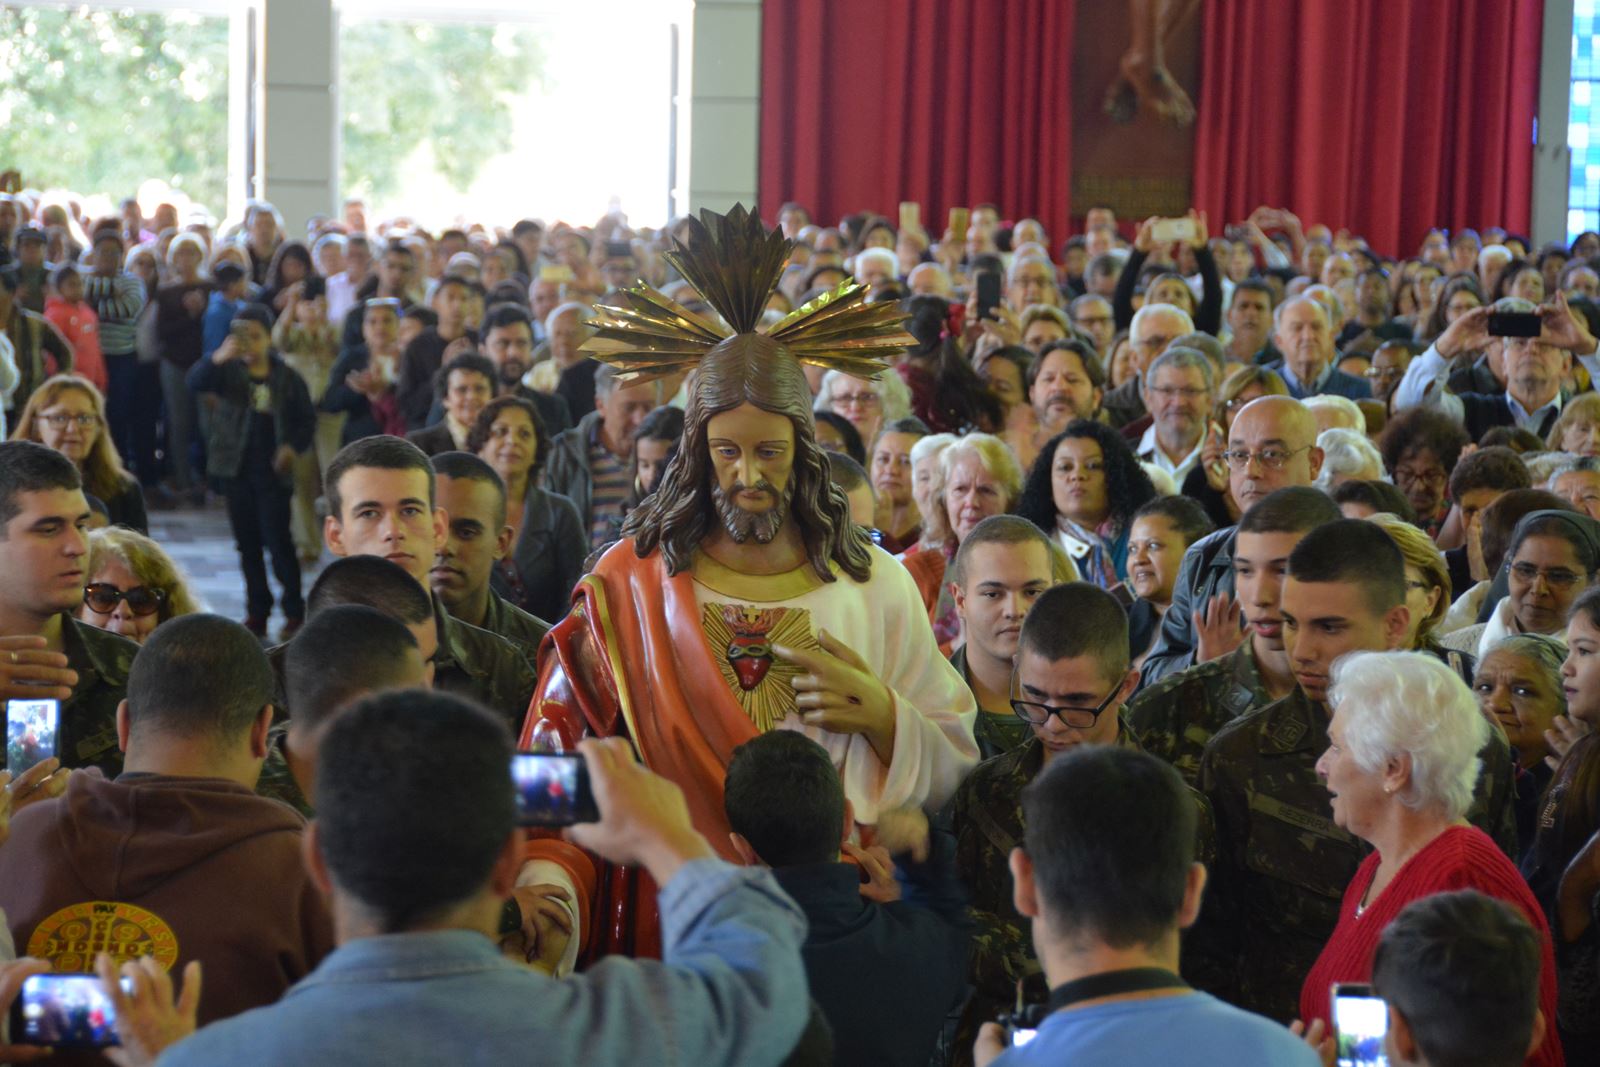 Fiés de toda arquidiocese celebram o Sagrado Coração de Jesus na Catedral de Londrina